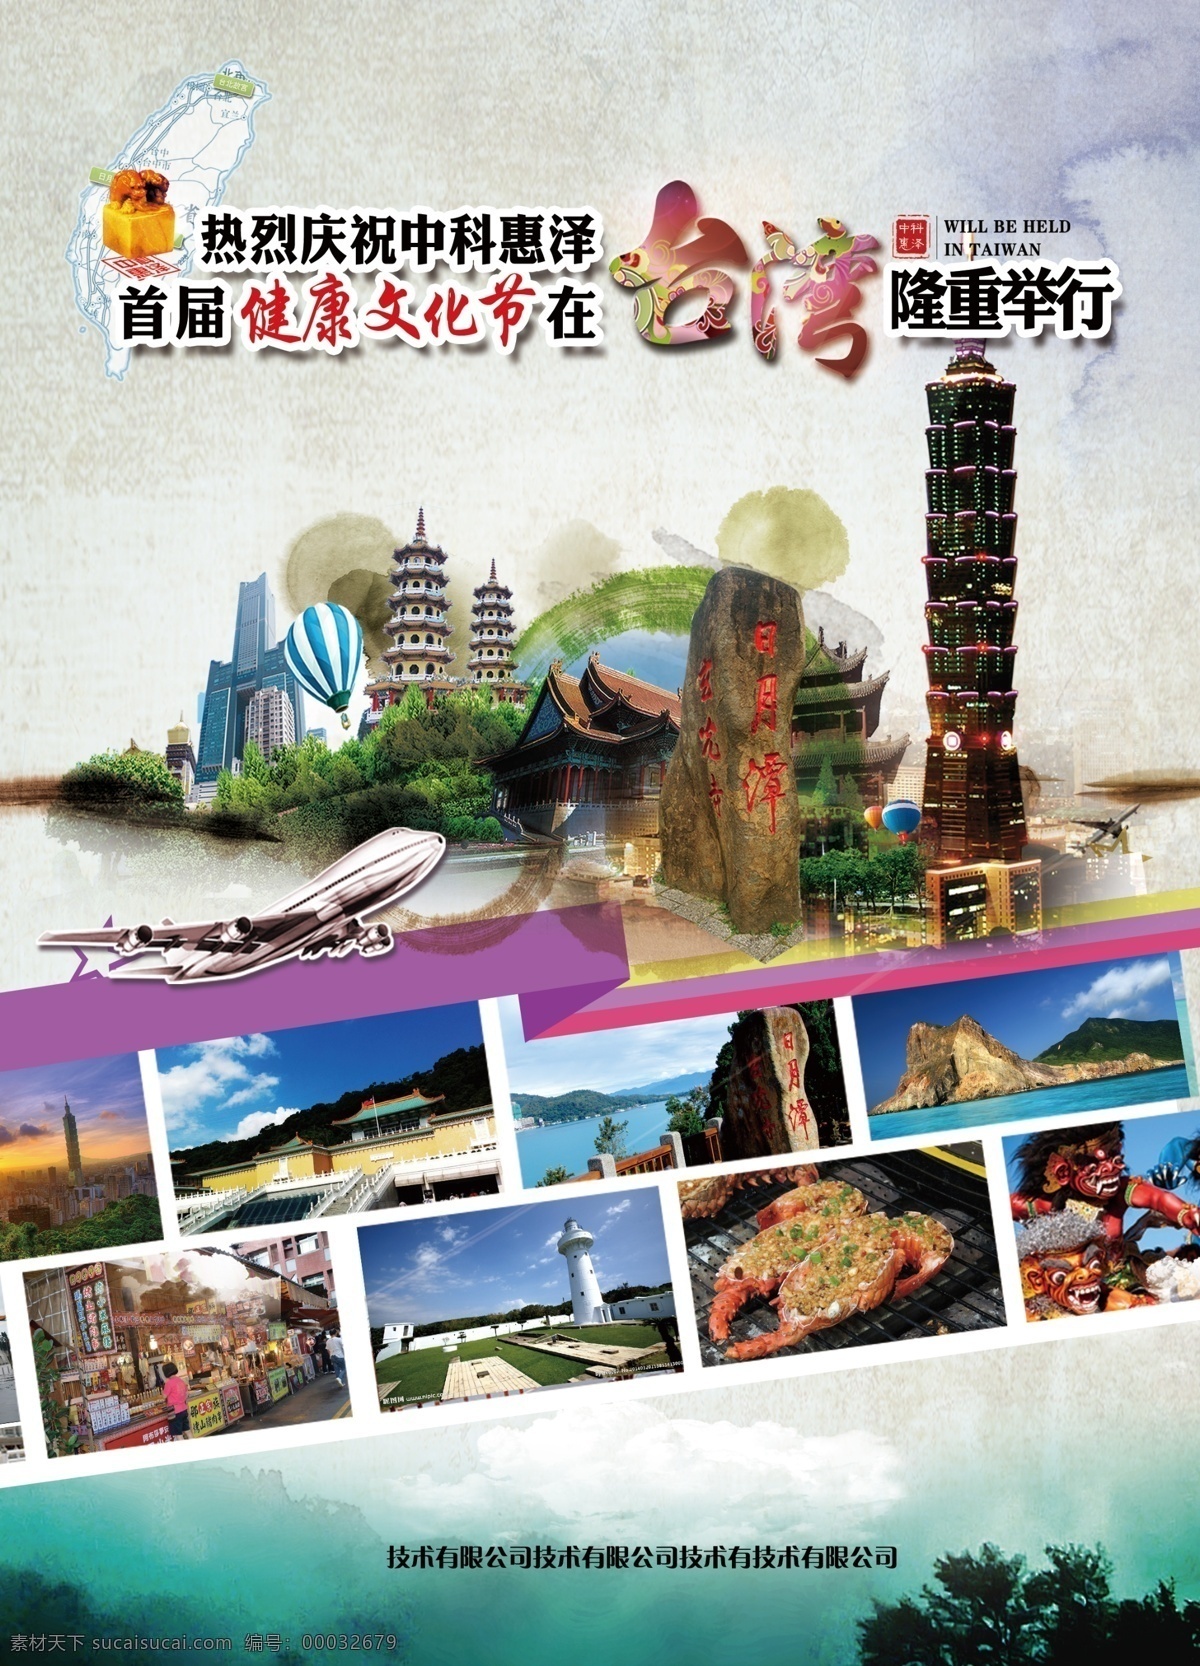 台湾梦海报 旅游海报 台湾 文化旅游 101大厦 日月潭 台湾旅游 海报 背景 博物馆 水墨风 水墨旅游